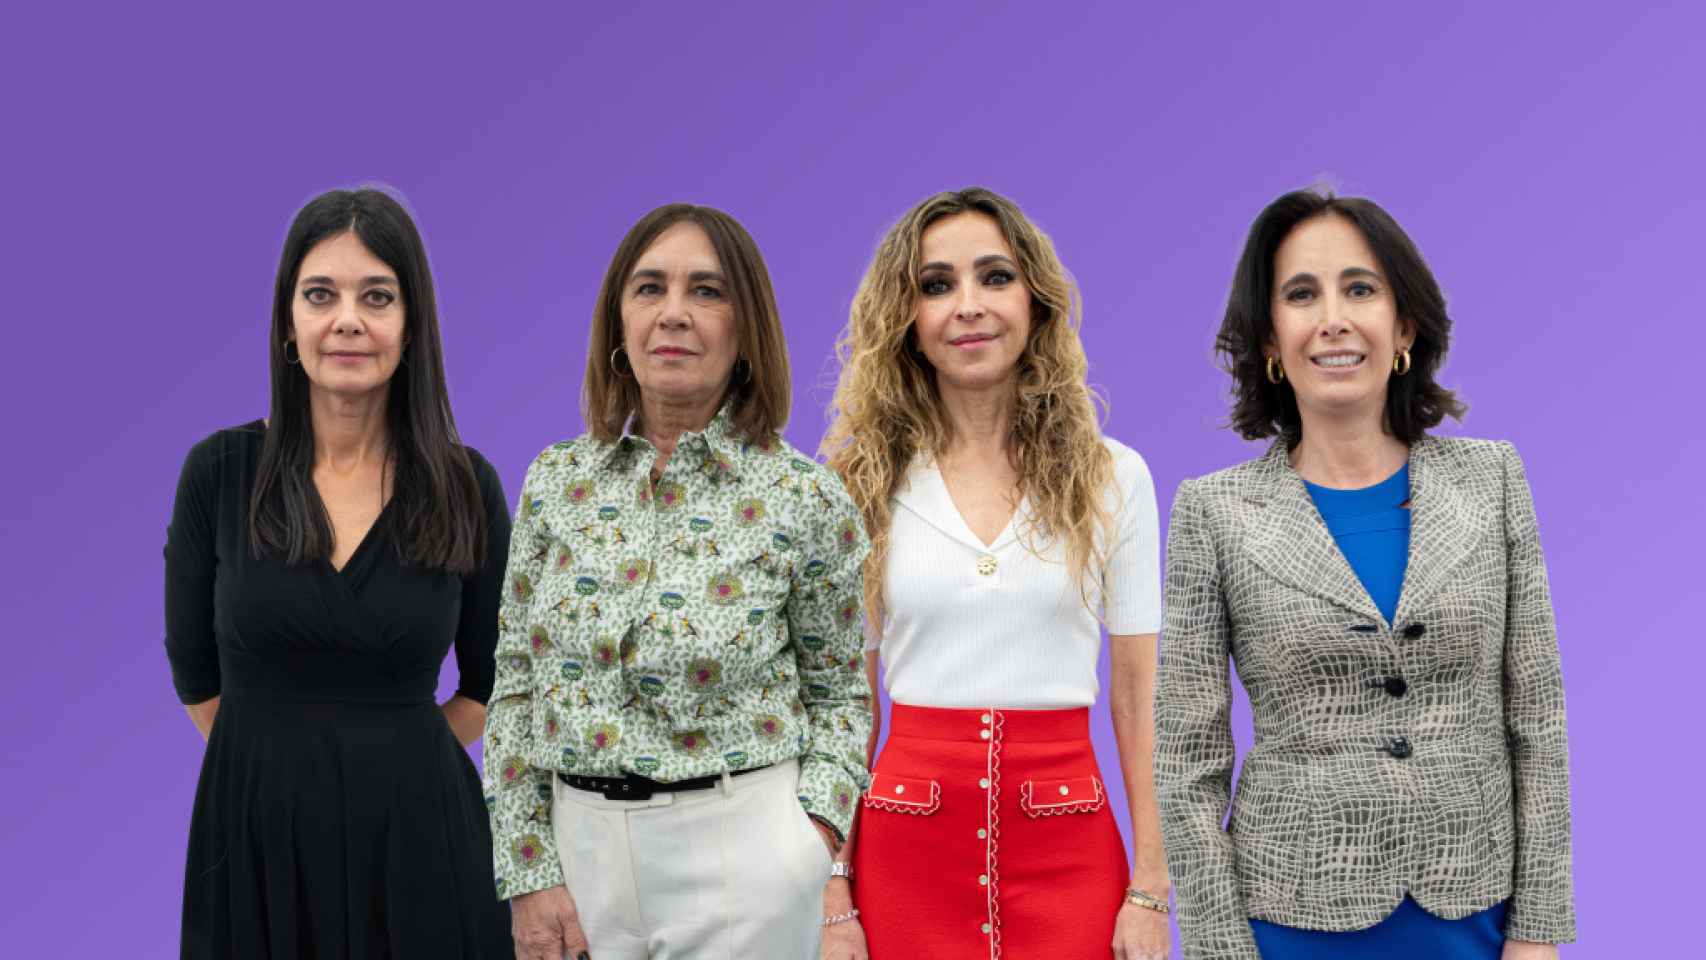 De izq. a dcha.: Silvia Leal, Charo Izquierdo, Patricia Benito y Marta Colomina.